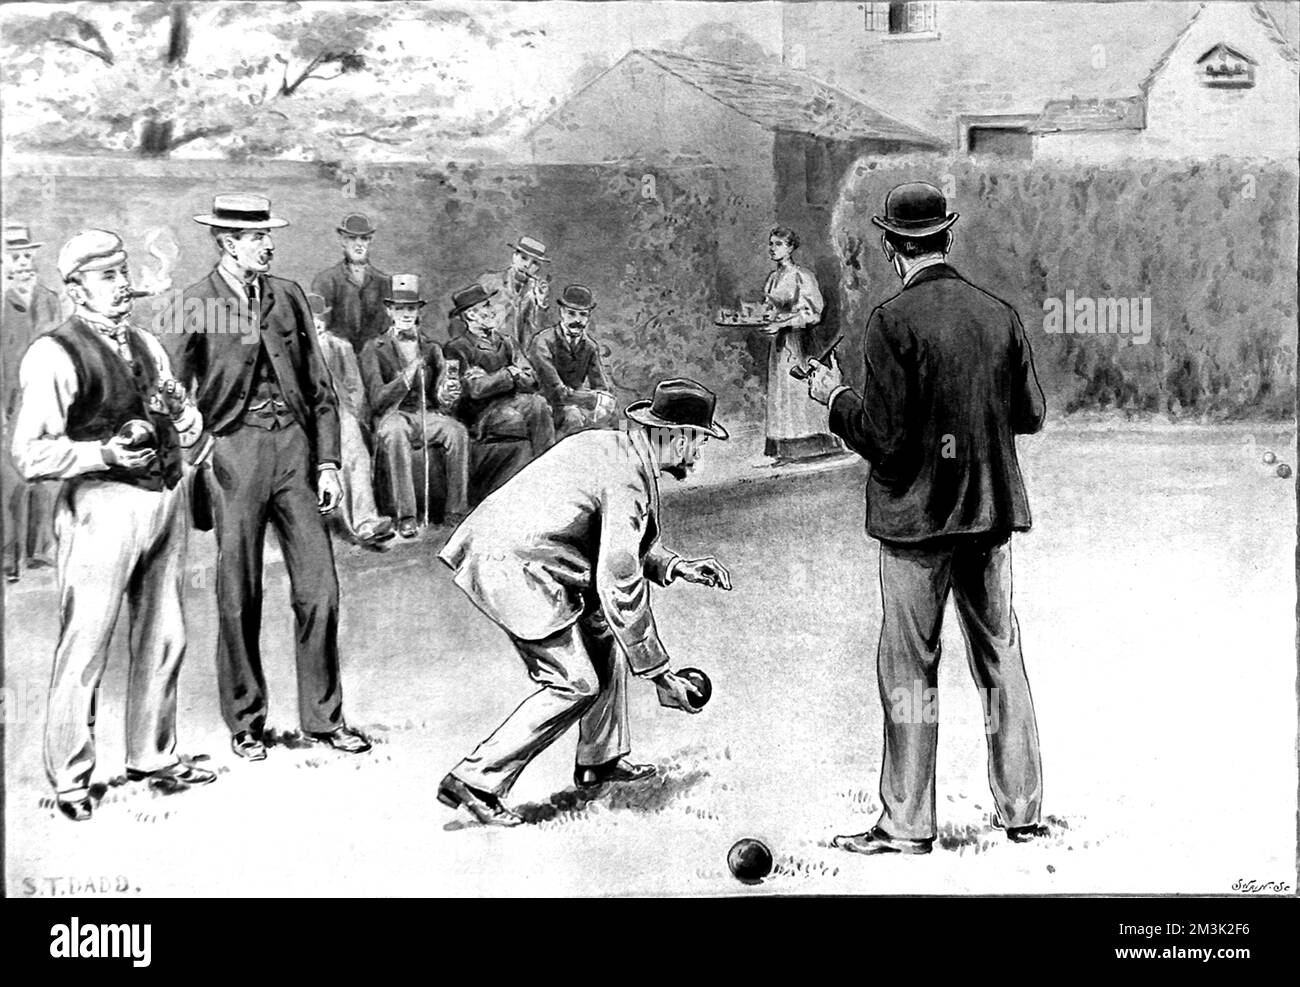 Gioco di bocce in corso nel giardino di una casa suburbana, Inghilterra. Data: 1895 Foto Stock